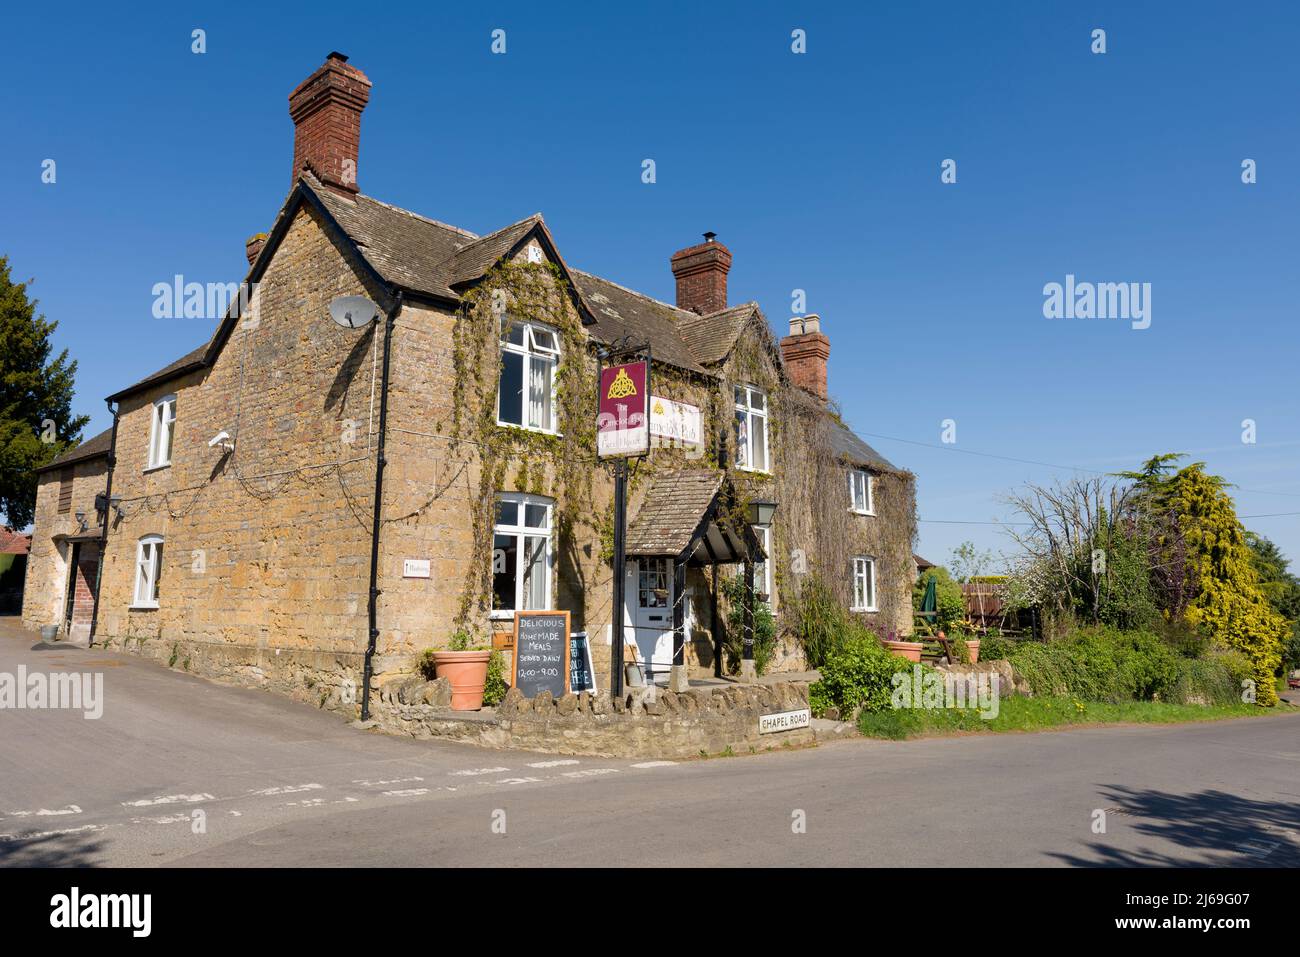 La maison publique de Camelot dans le village de South Cadbury, Somerset, Angleterre. Banque D'Images